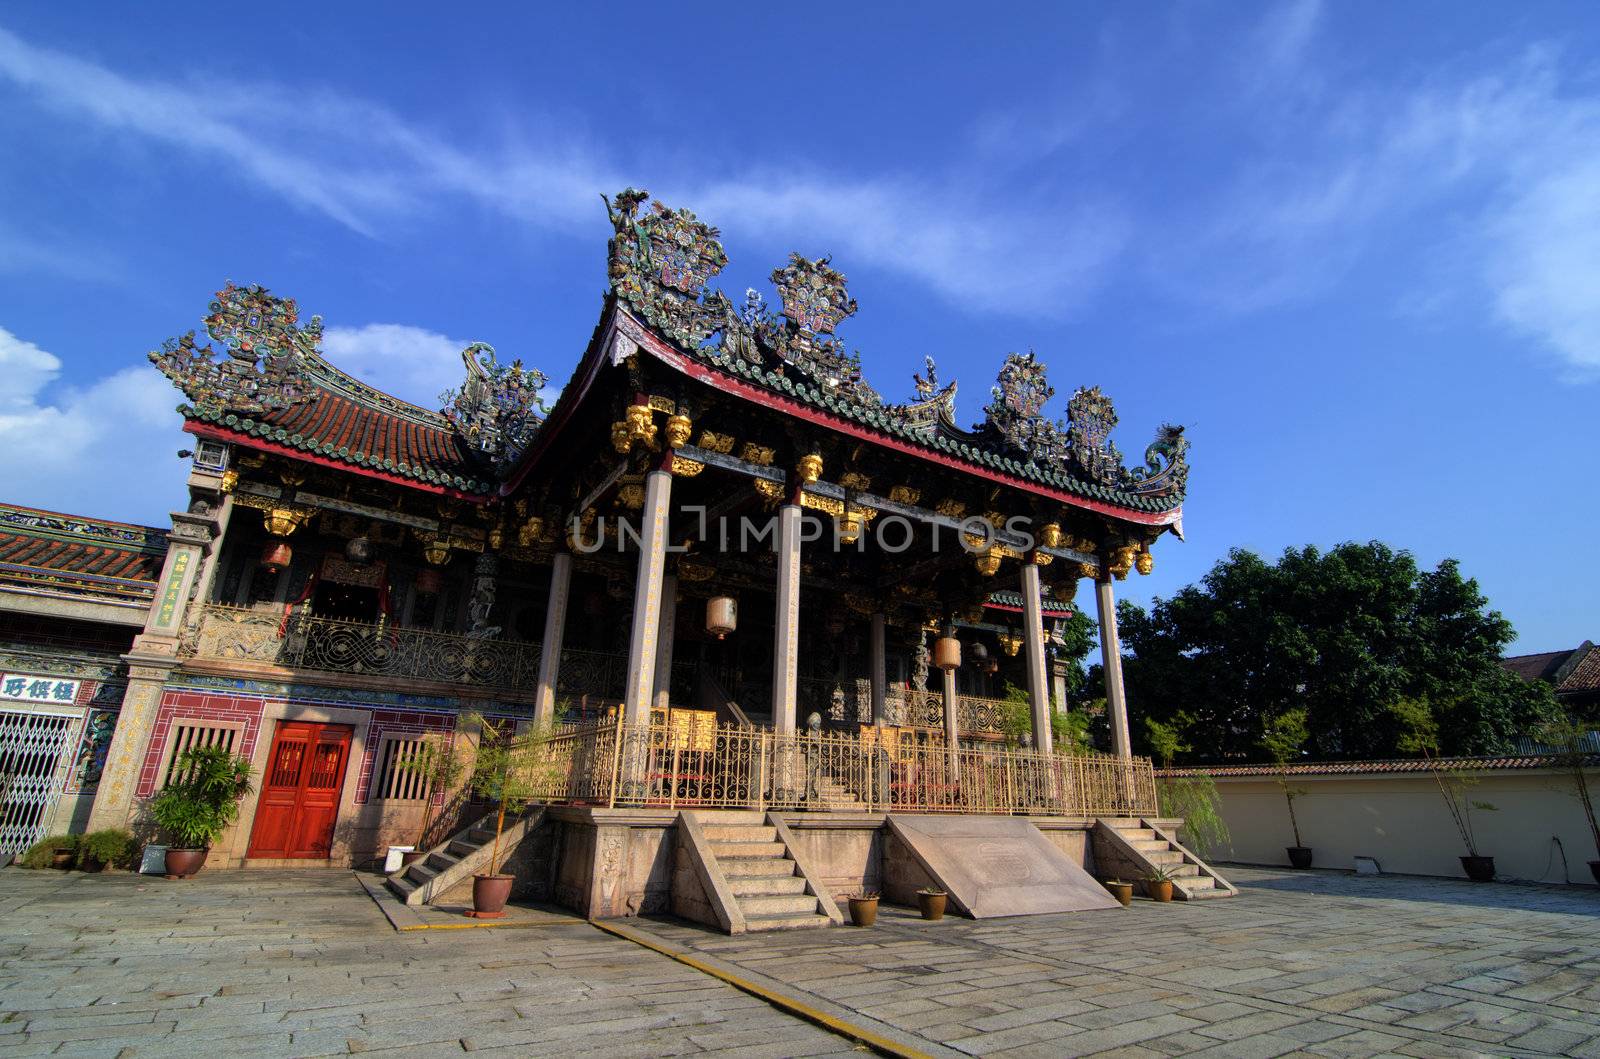 Khoo kongsi temple at penang by yuliang11